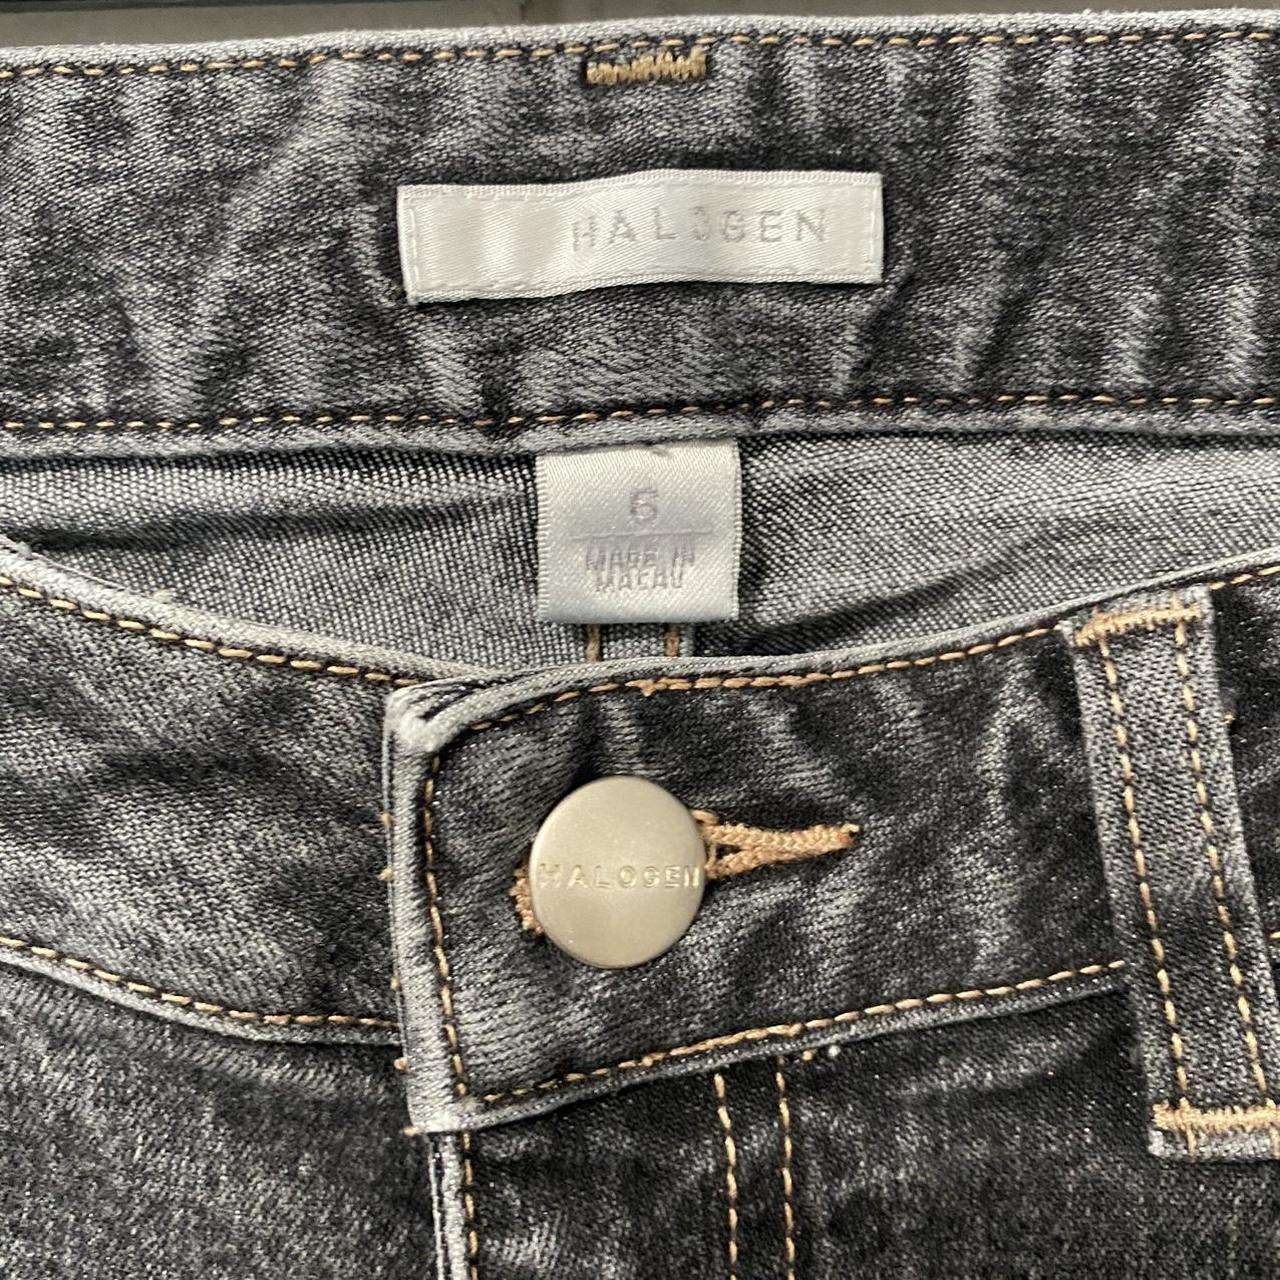 Product Image 2 - Halogen women jean pants size